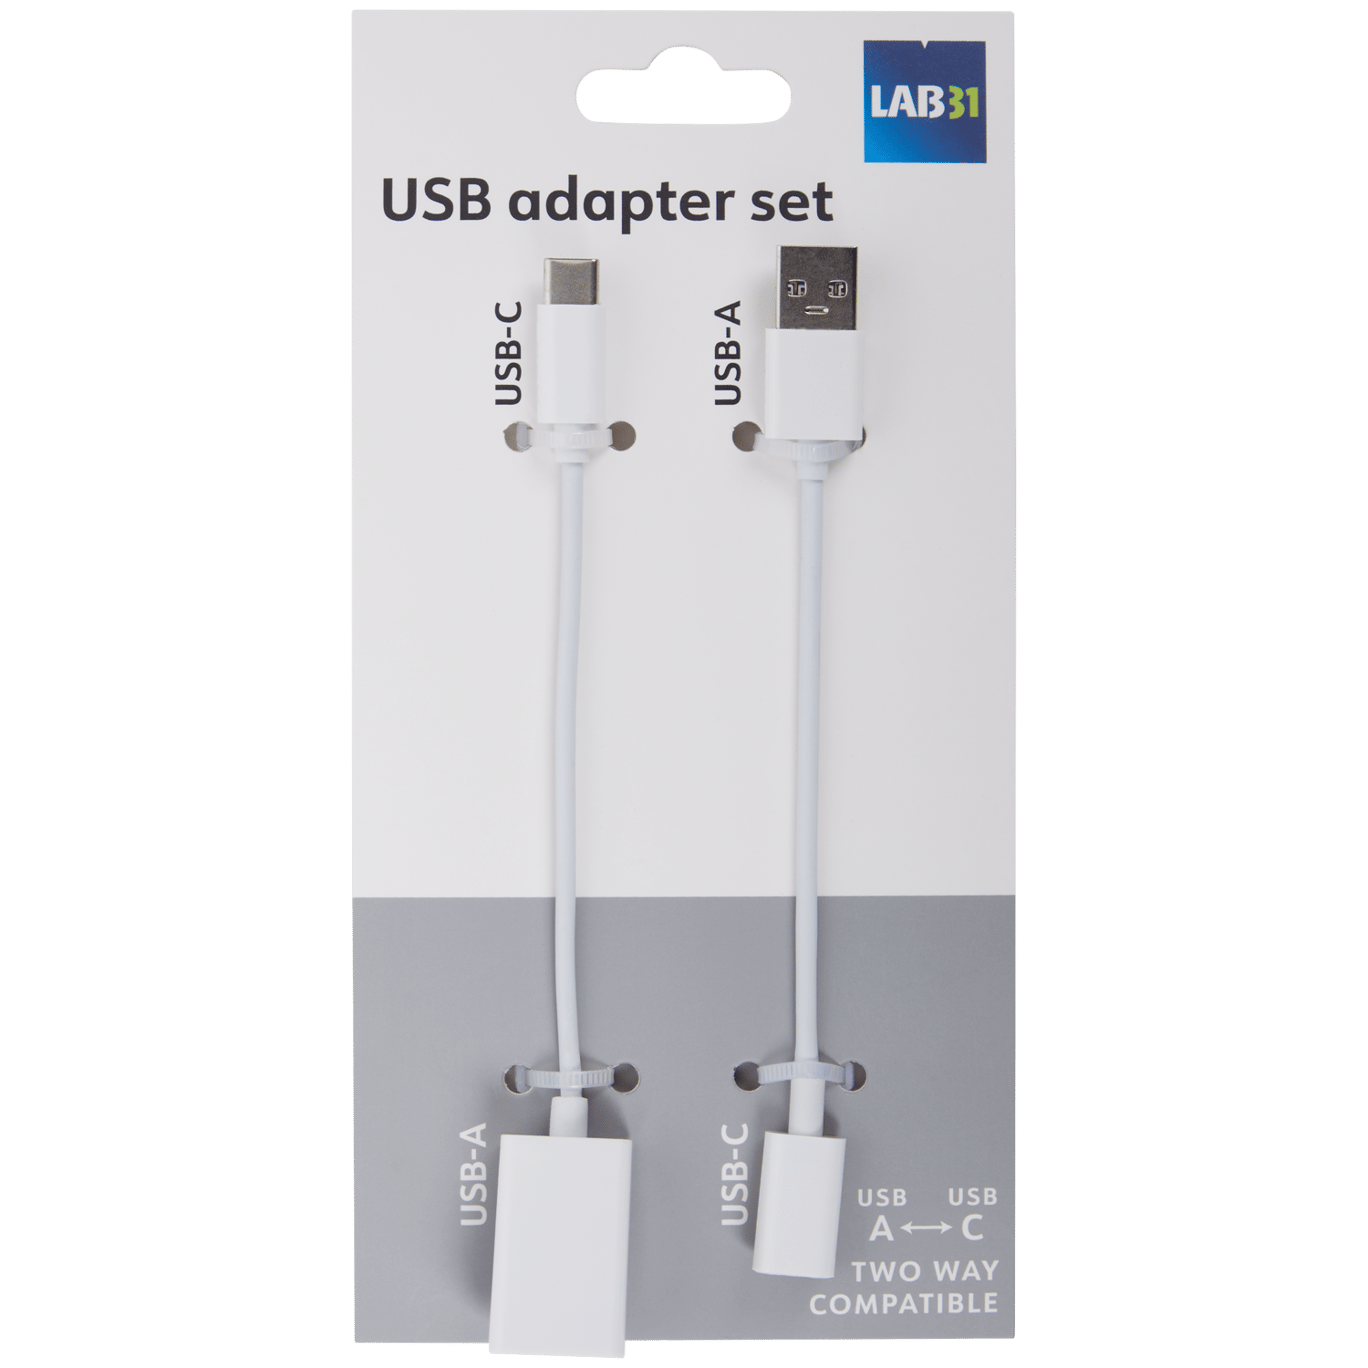 Adattatori USB C Lab31